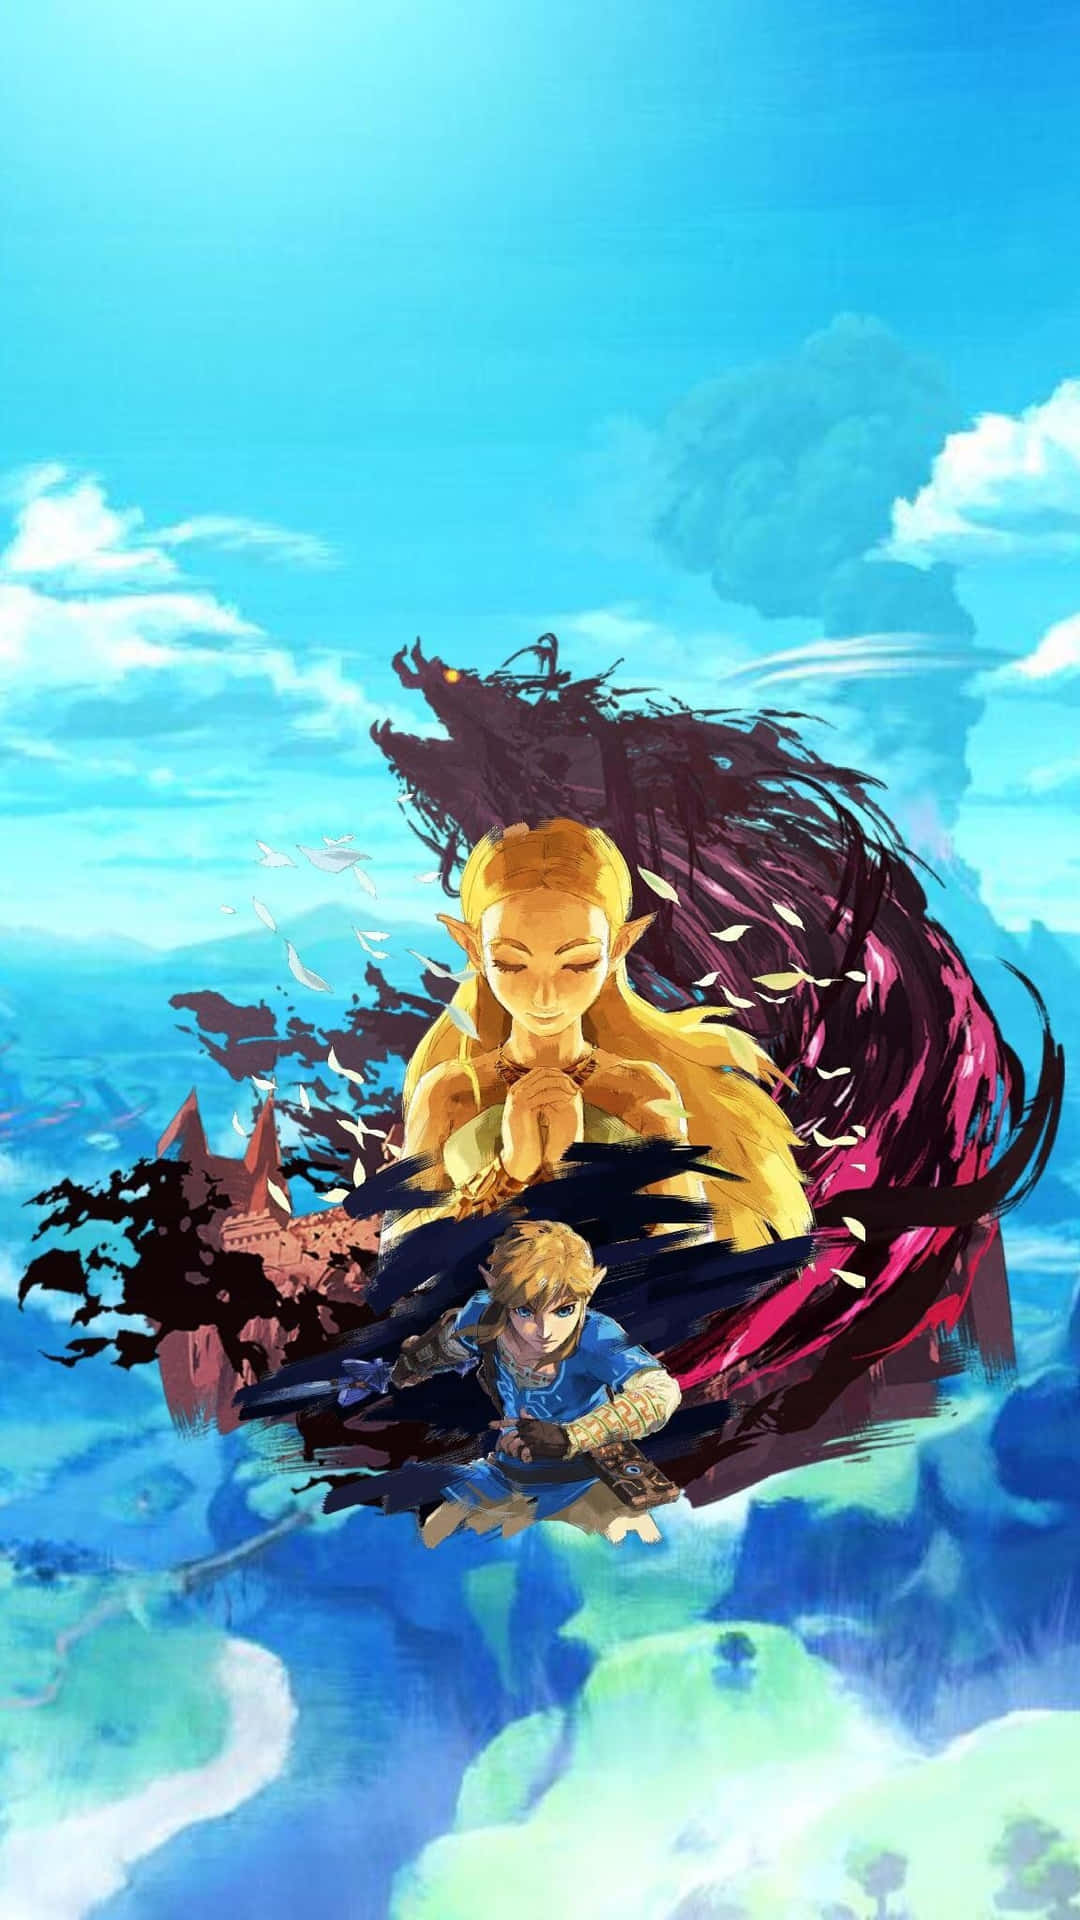 Nyd den legendariske oplevelse af Zelda Phone! Wallpaper